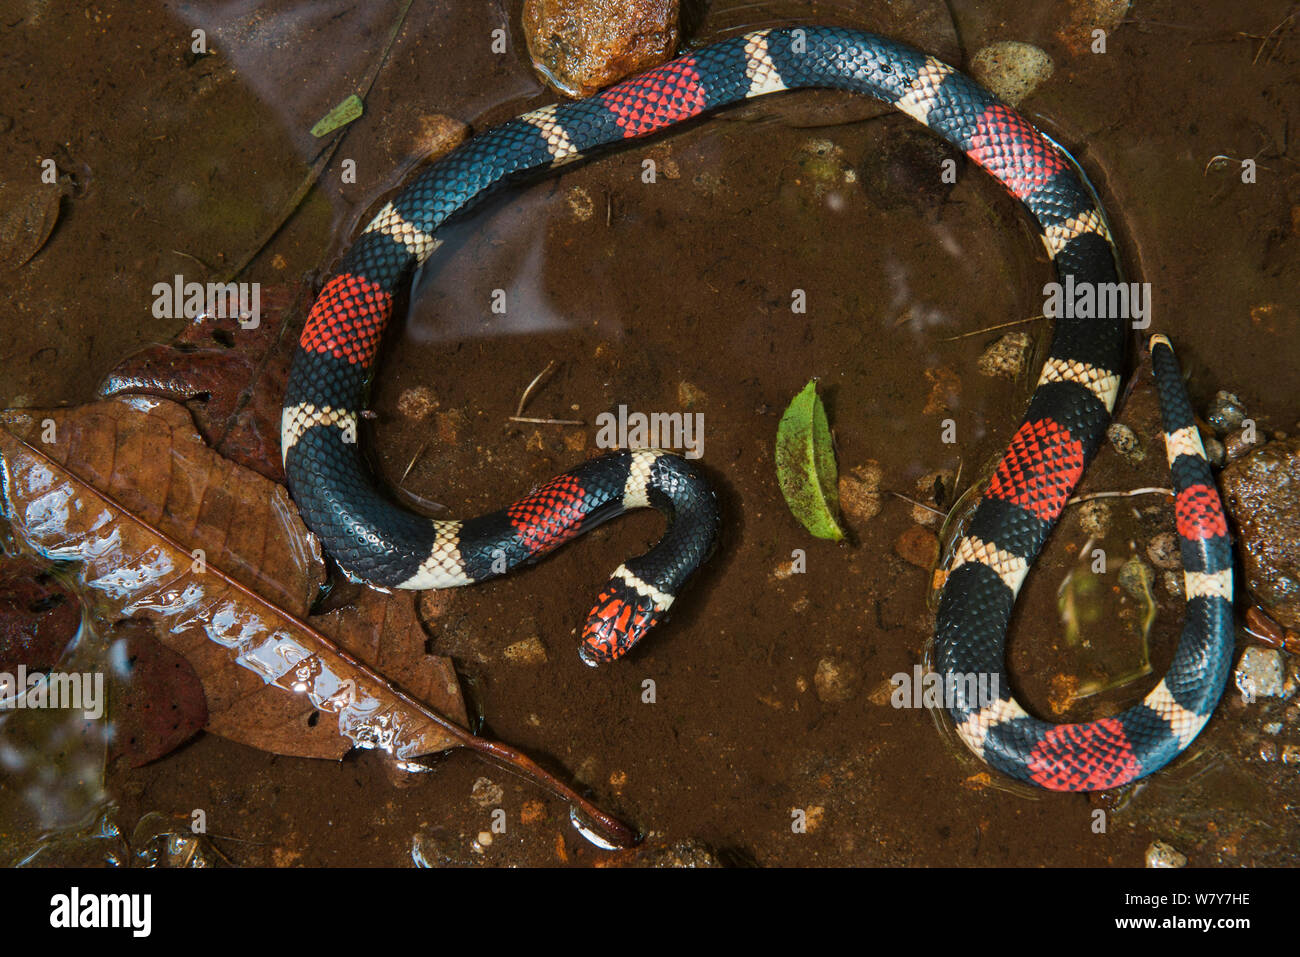 Suriname / acquatico Serpente corallo (Micrurus surinamensis) Amazon, Ecuador. Captive, avviene in Sud America. Foto Stock